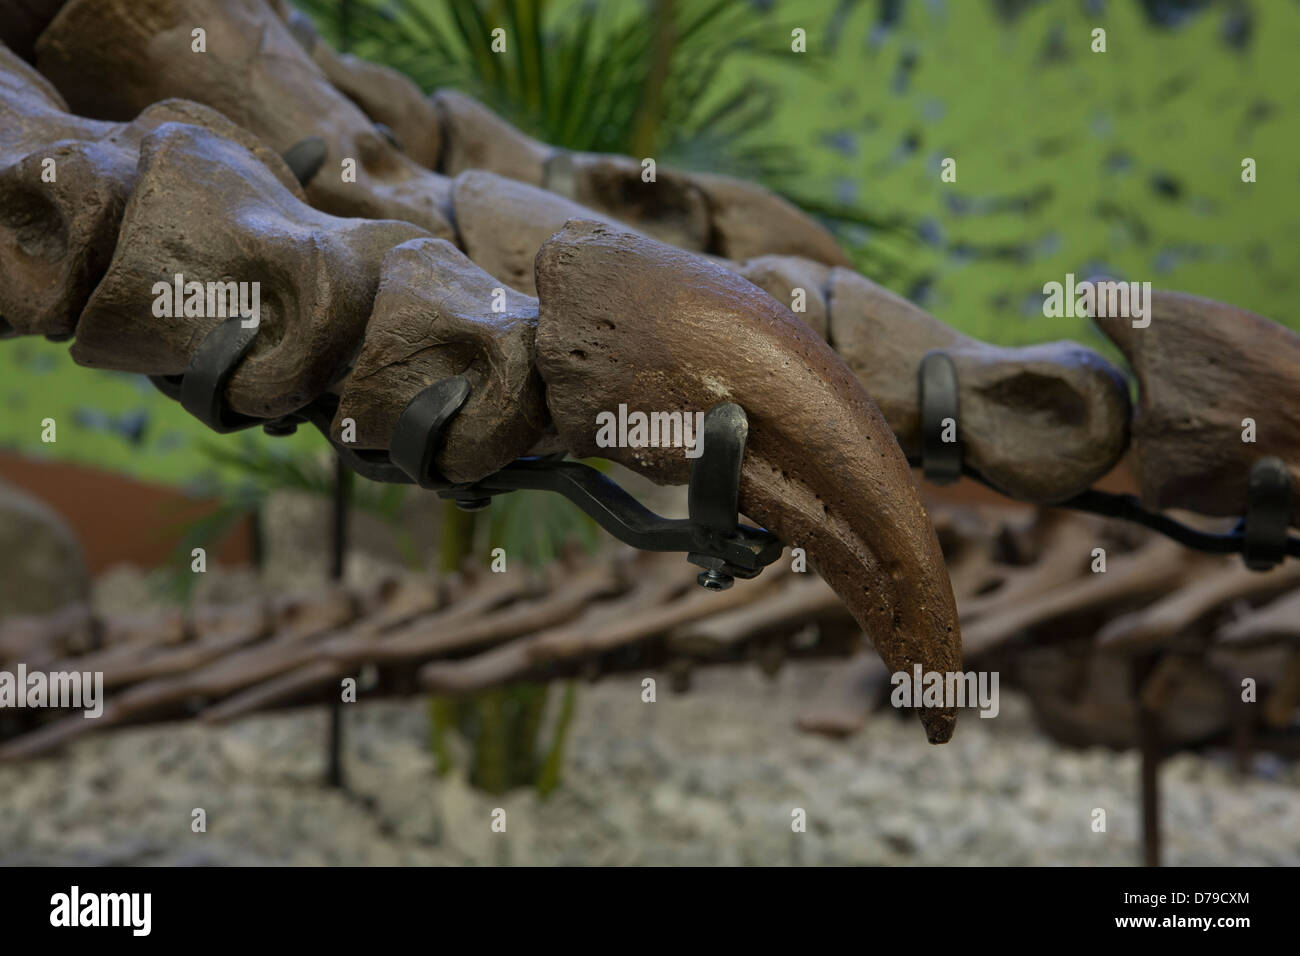 Stahlrahmen Arbeit spannen tatsächlichen Knochen (Dinosaurier Fossil) in Lage, Museum der Welt Schätze in Wichita, KS Stockfoto